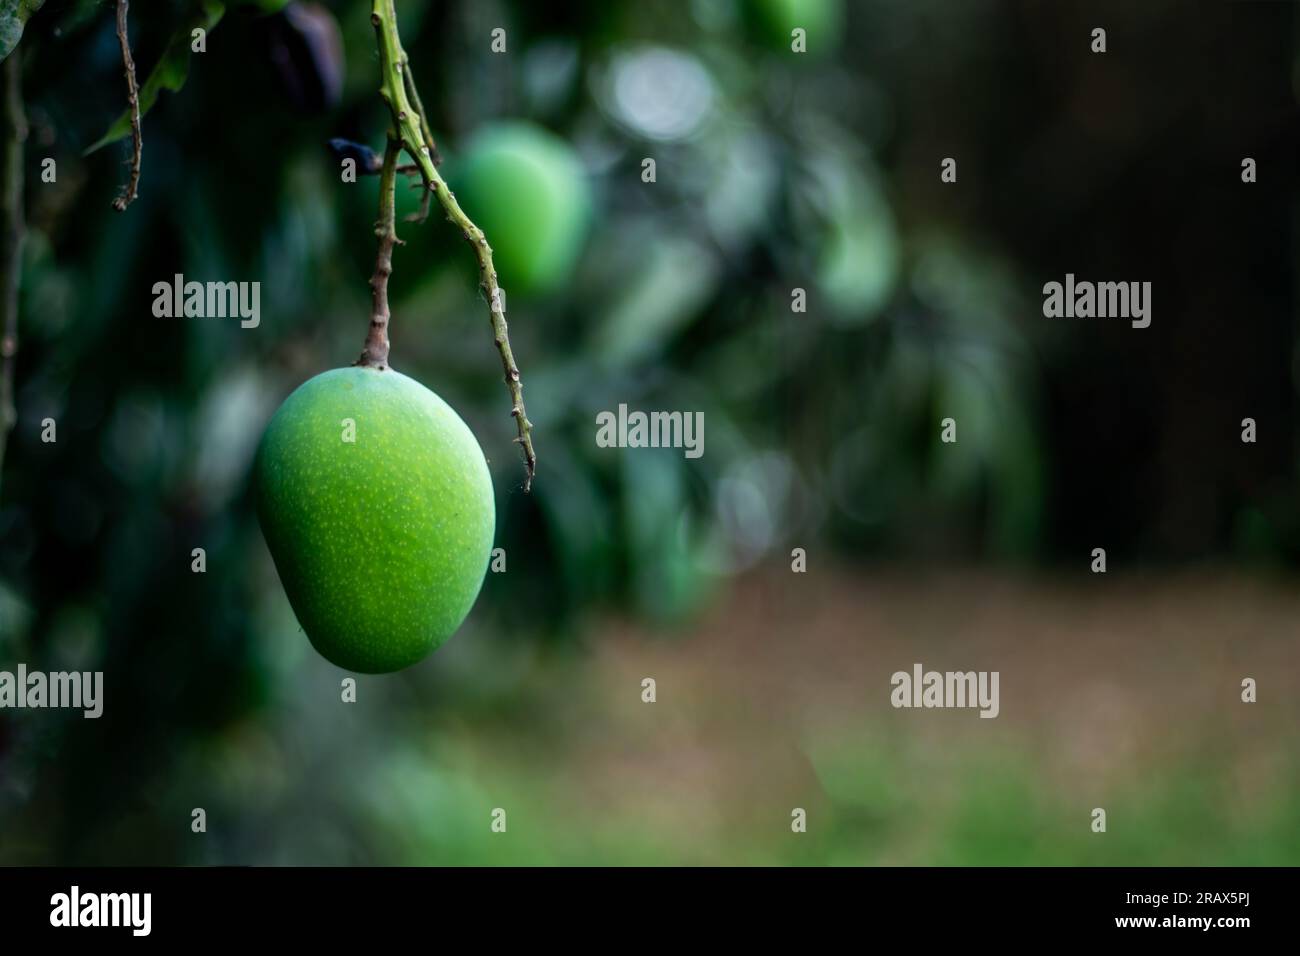 Die rohen Mangofrüchte haben einen reichen Geschmack und Aroma. Sour Green Mangos sind mittelgrün bis dunkelgrün und sehr hart. Grüne Mangos sind junge unreife Mangos Stockfoto